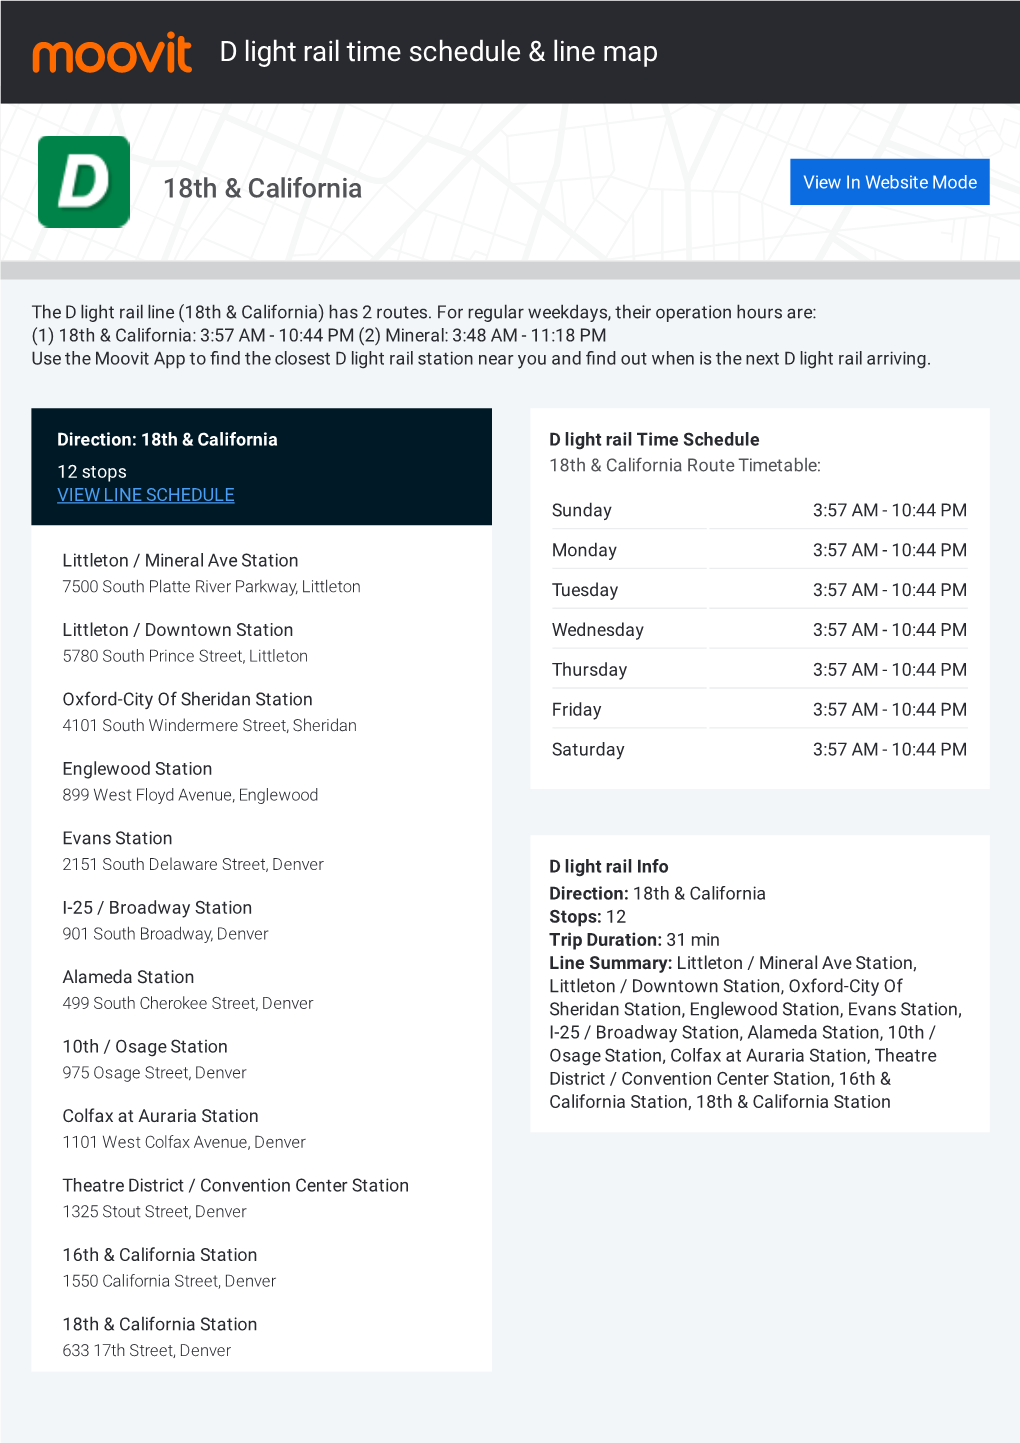 D Light Rail Time Schedule & Line Route